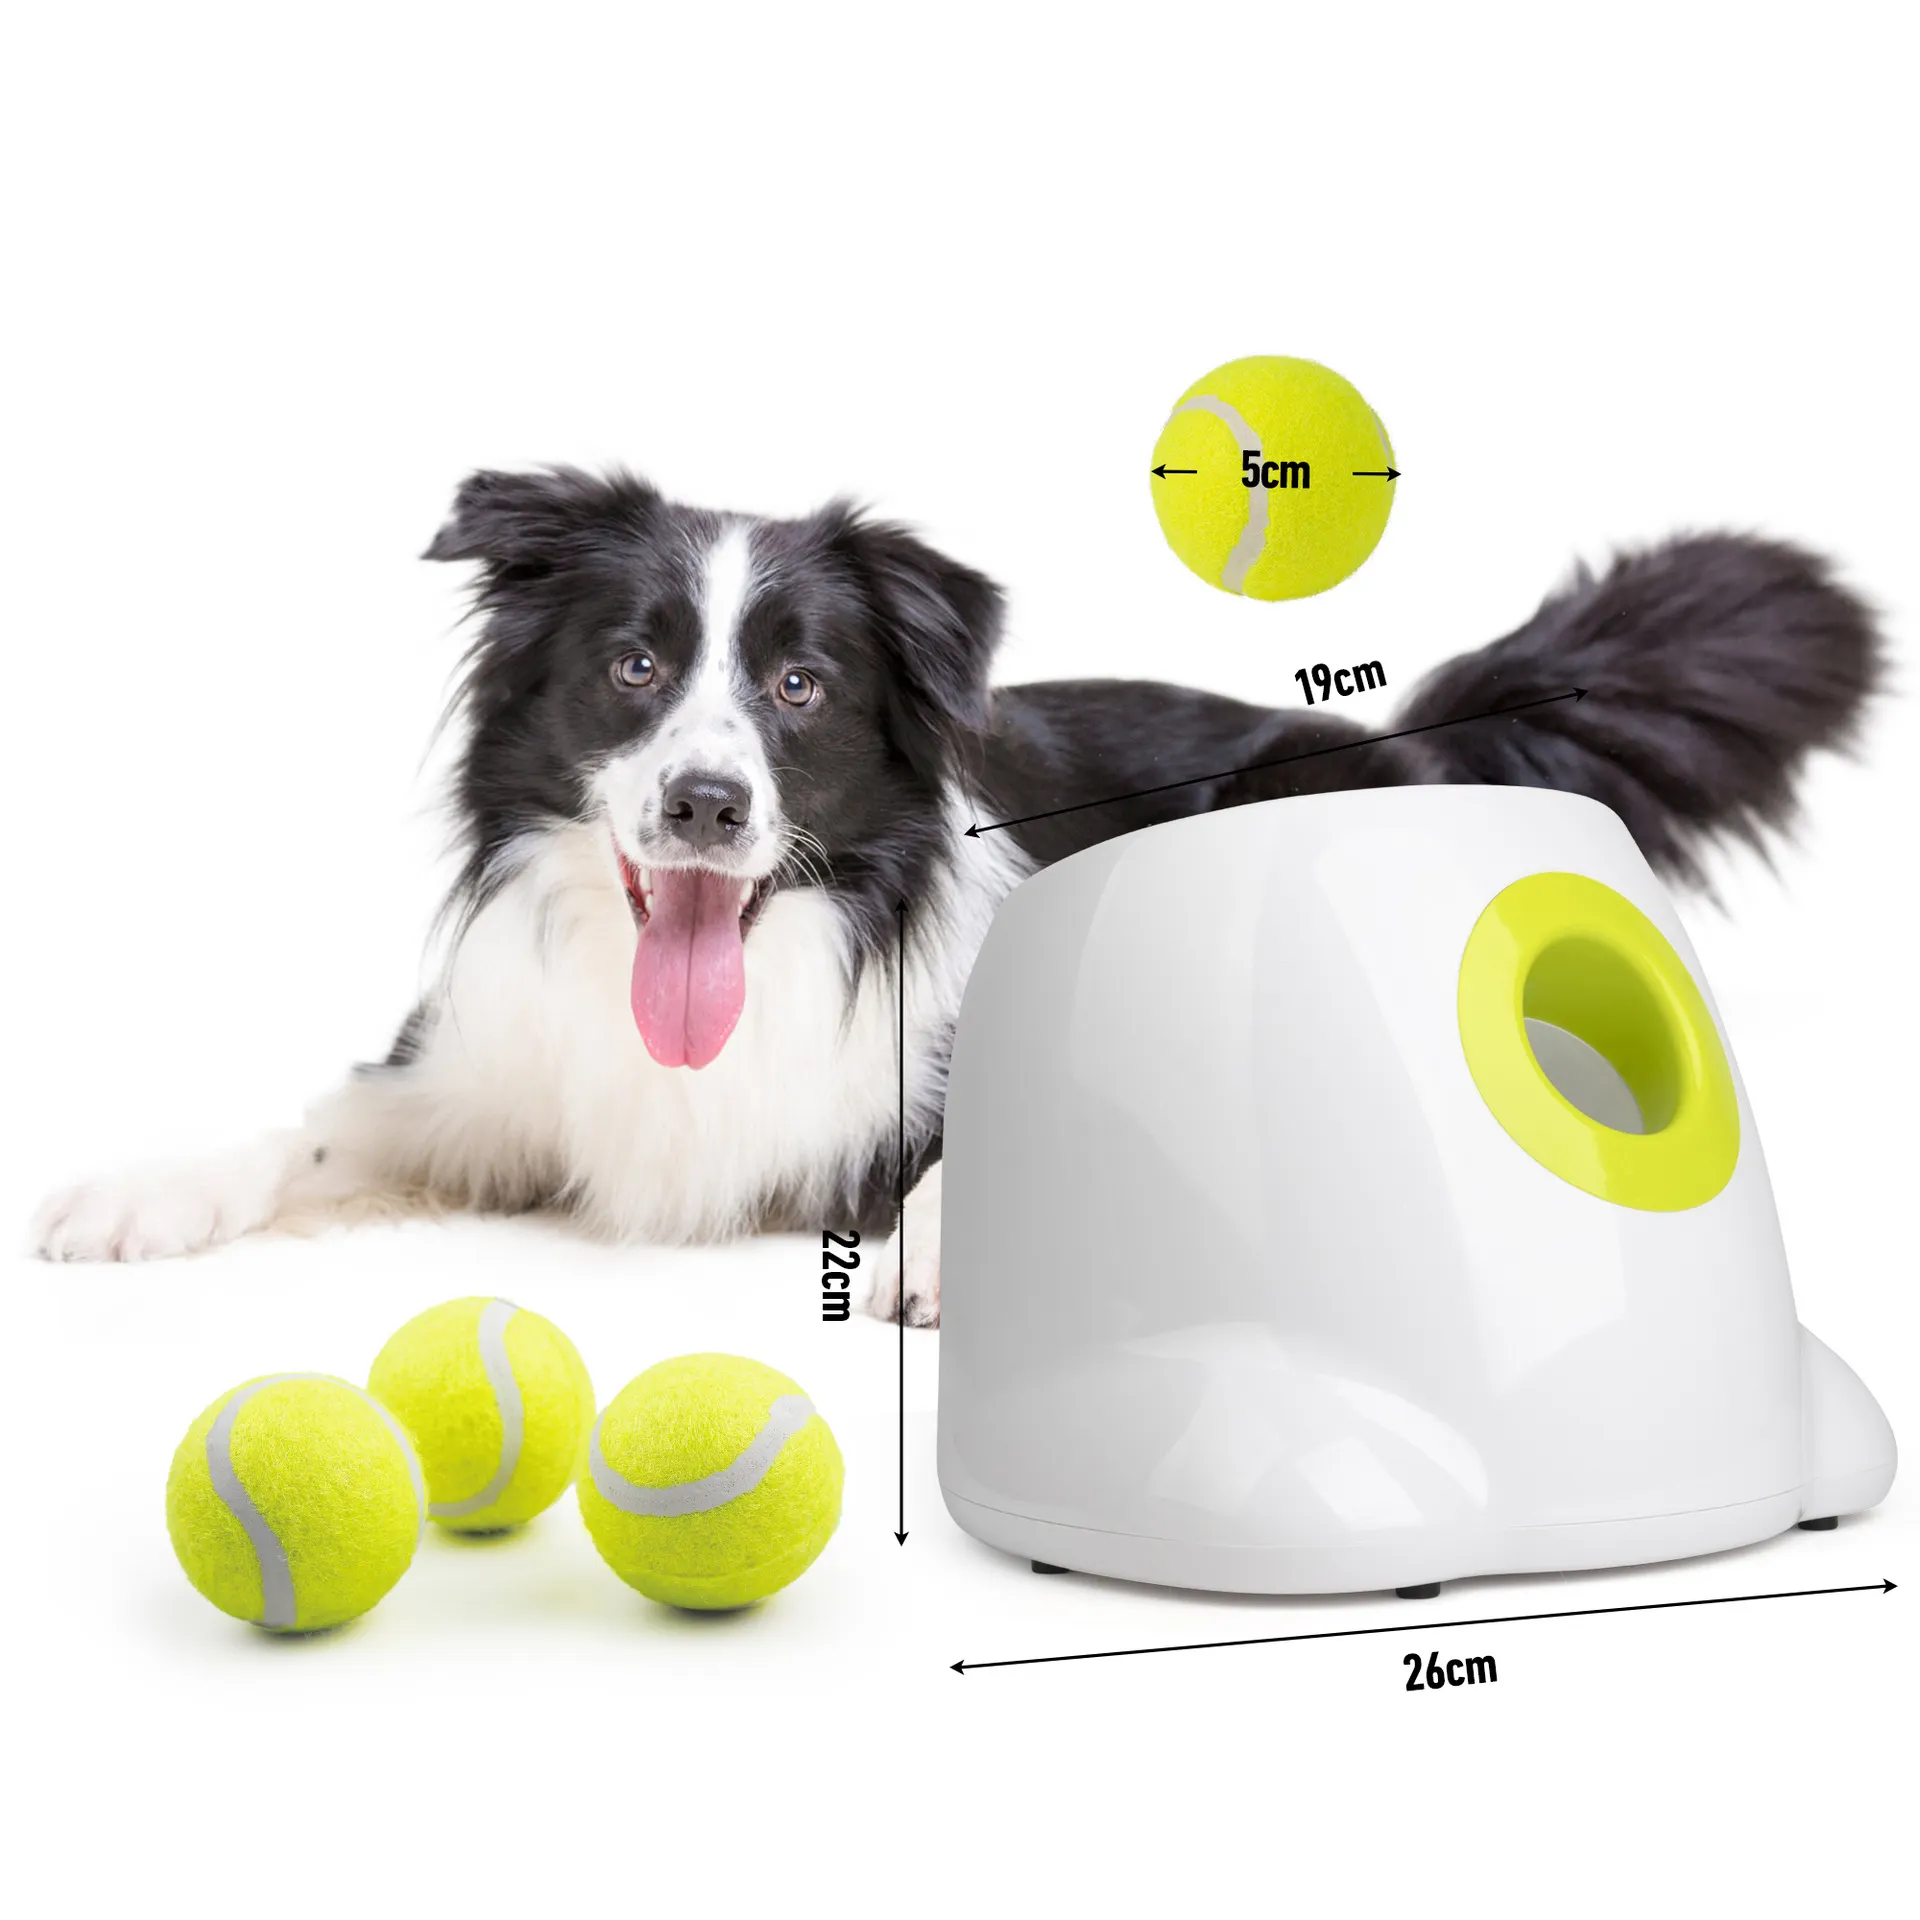 Con chó quần vợt vật nuôi tương tác lấy quần vợt tự động thrower Máy chó đồ chơi cho con chó bóng Launcher